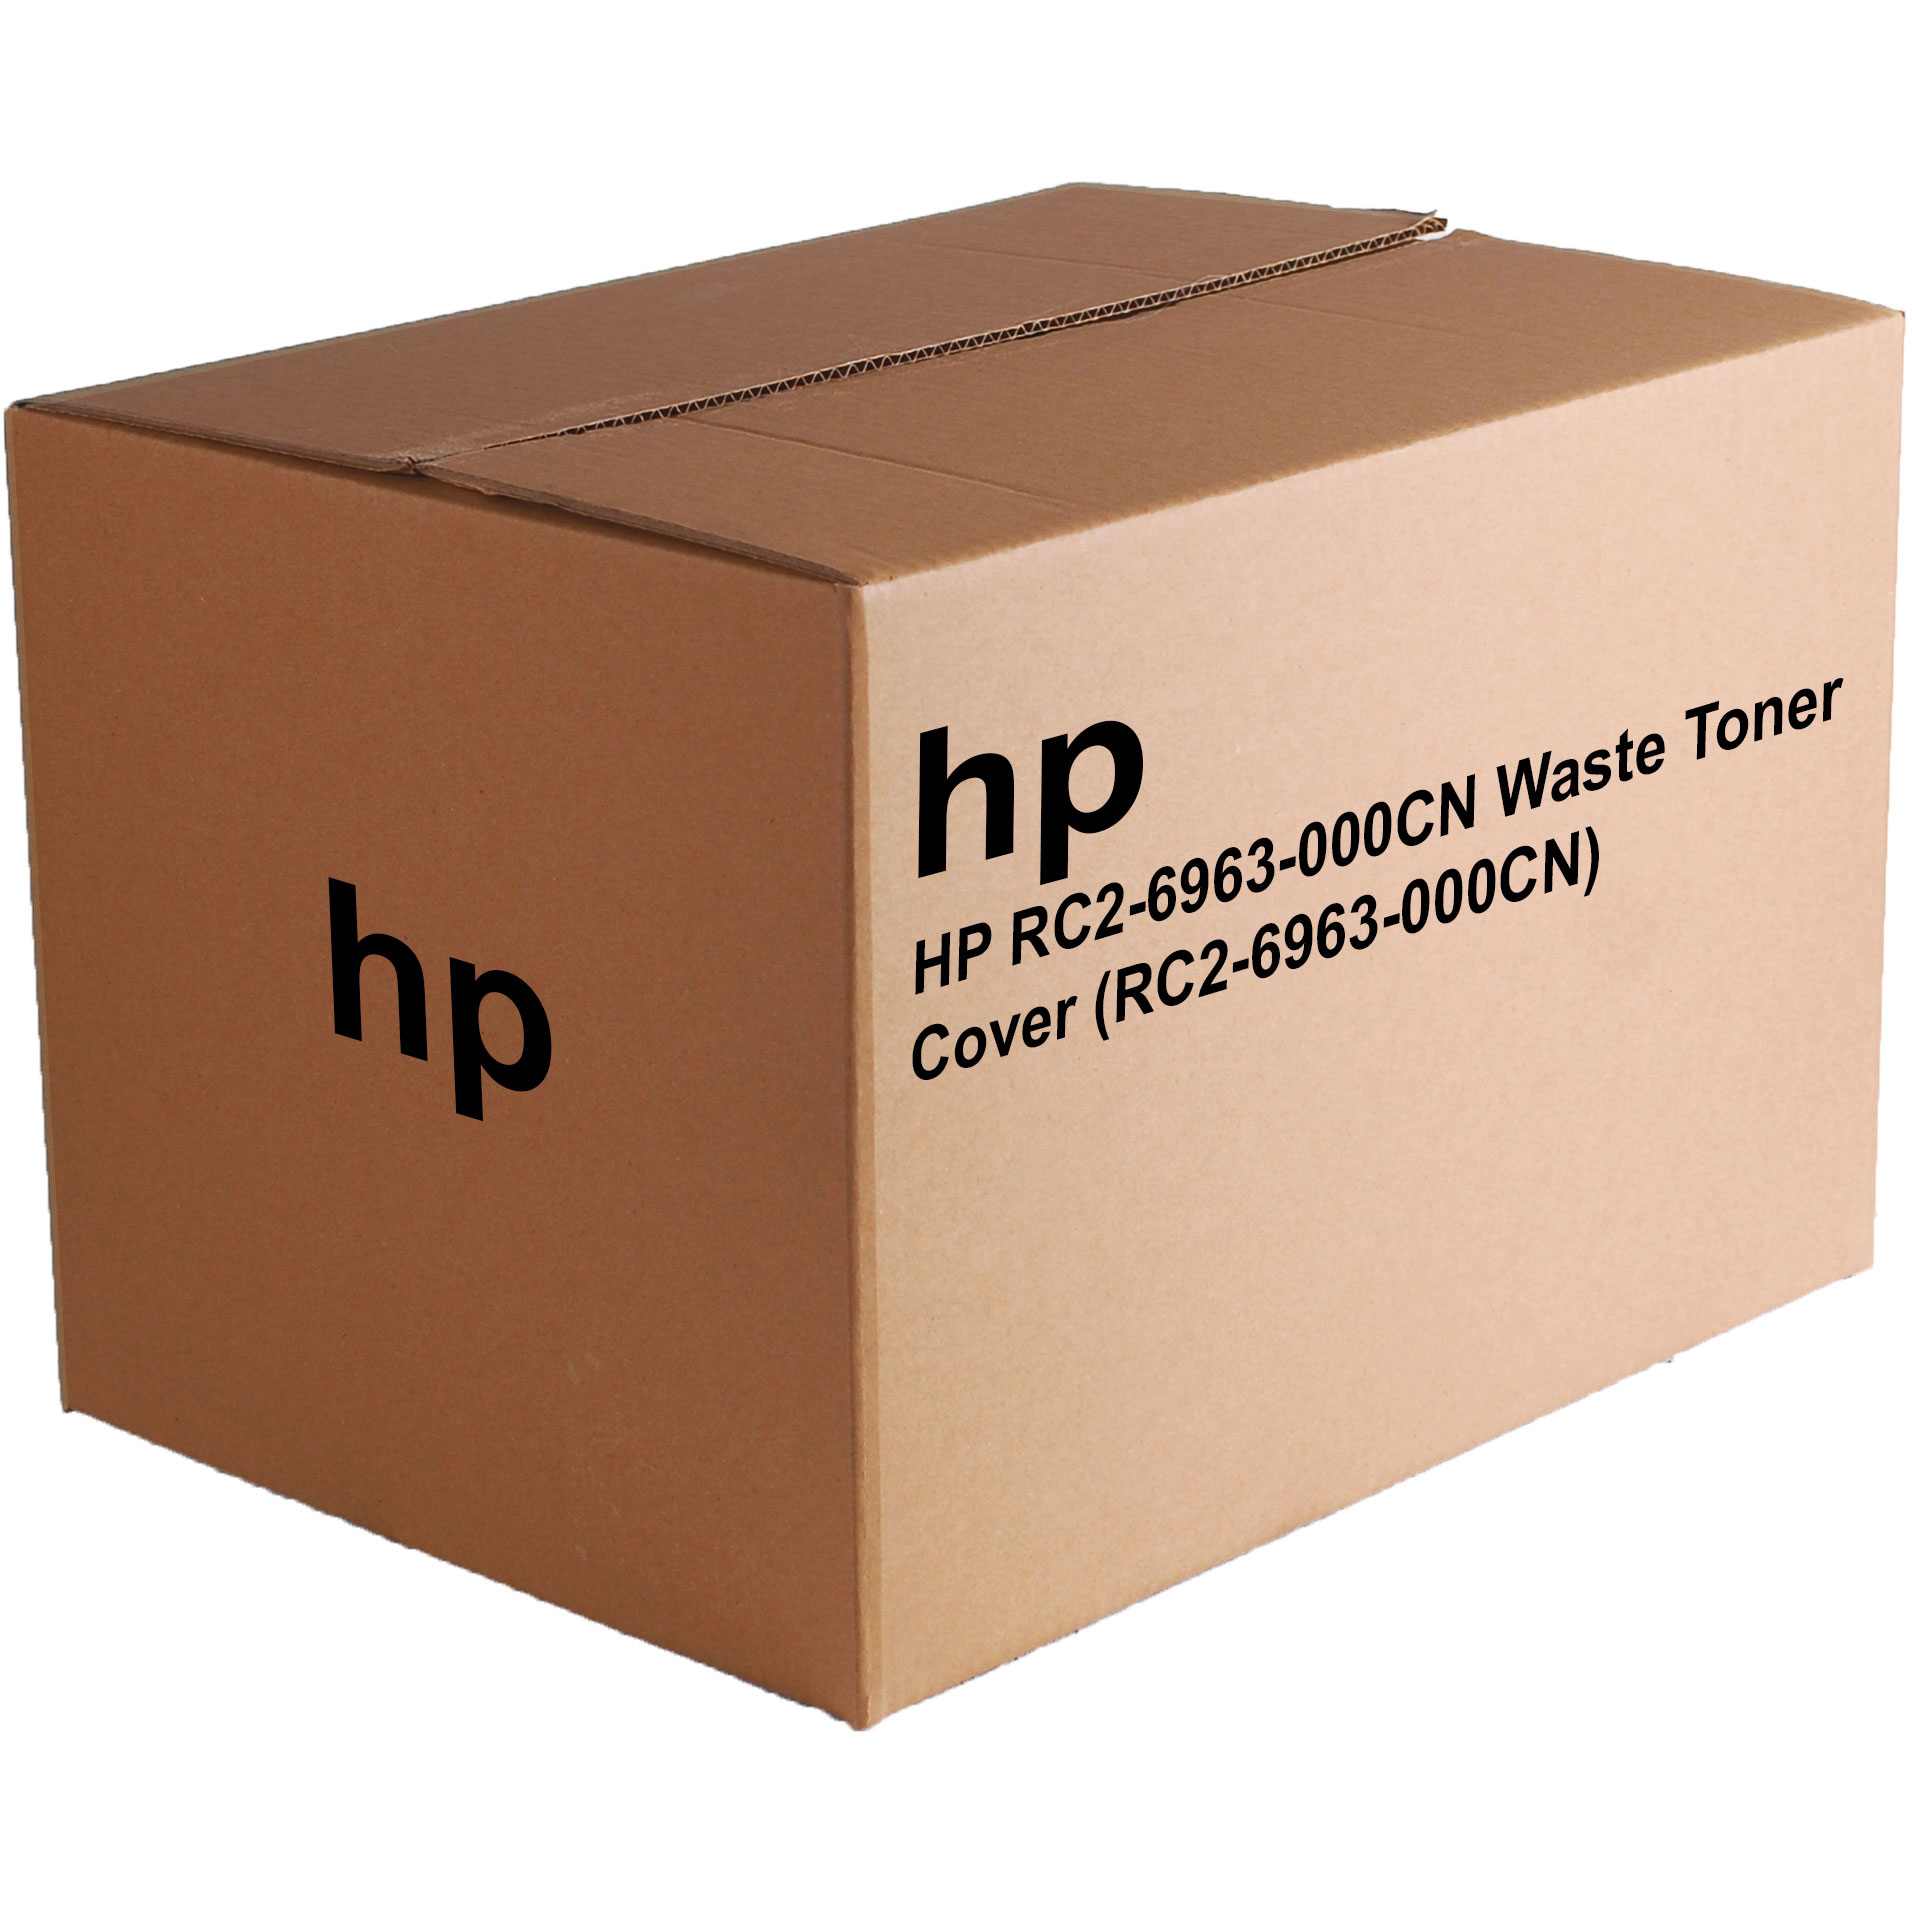 Original HP RC2-6963-000CN Waste Toner Cover (RC2-6963-000CN)